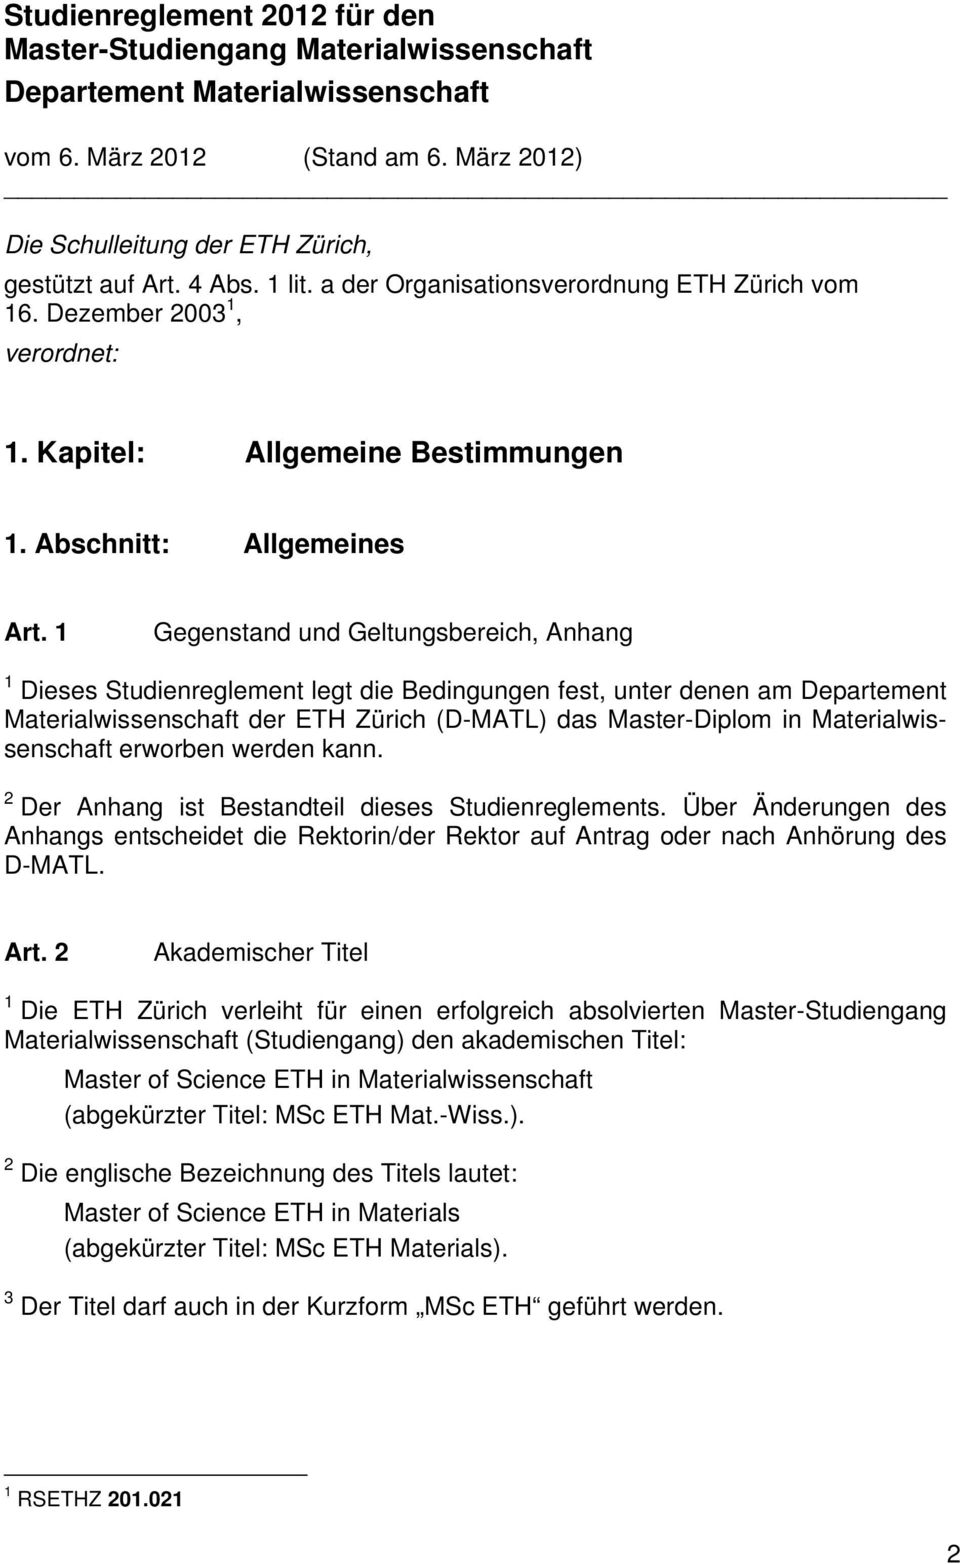 1 Gegenstand und Geltungsbereich, Anhang 1 Dieses Studienreglement legt die Bedingungen fest, unter denen am Departement Materialwissenschaft der ETH Zürich (D-MATL) das Master-Diplom in